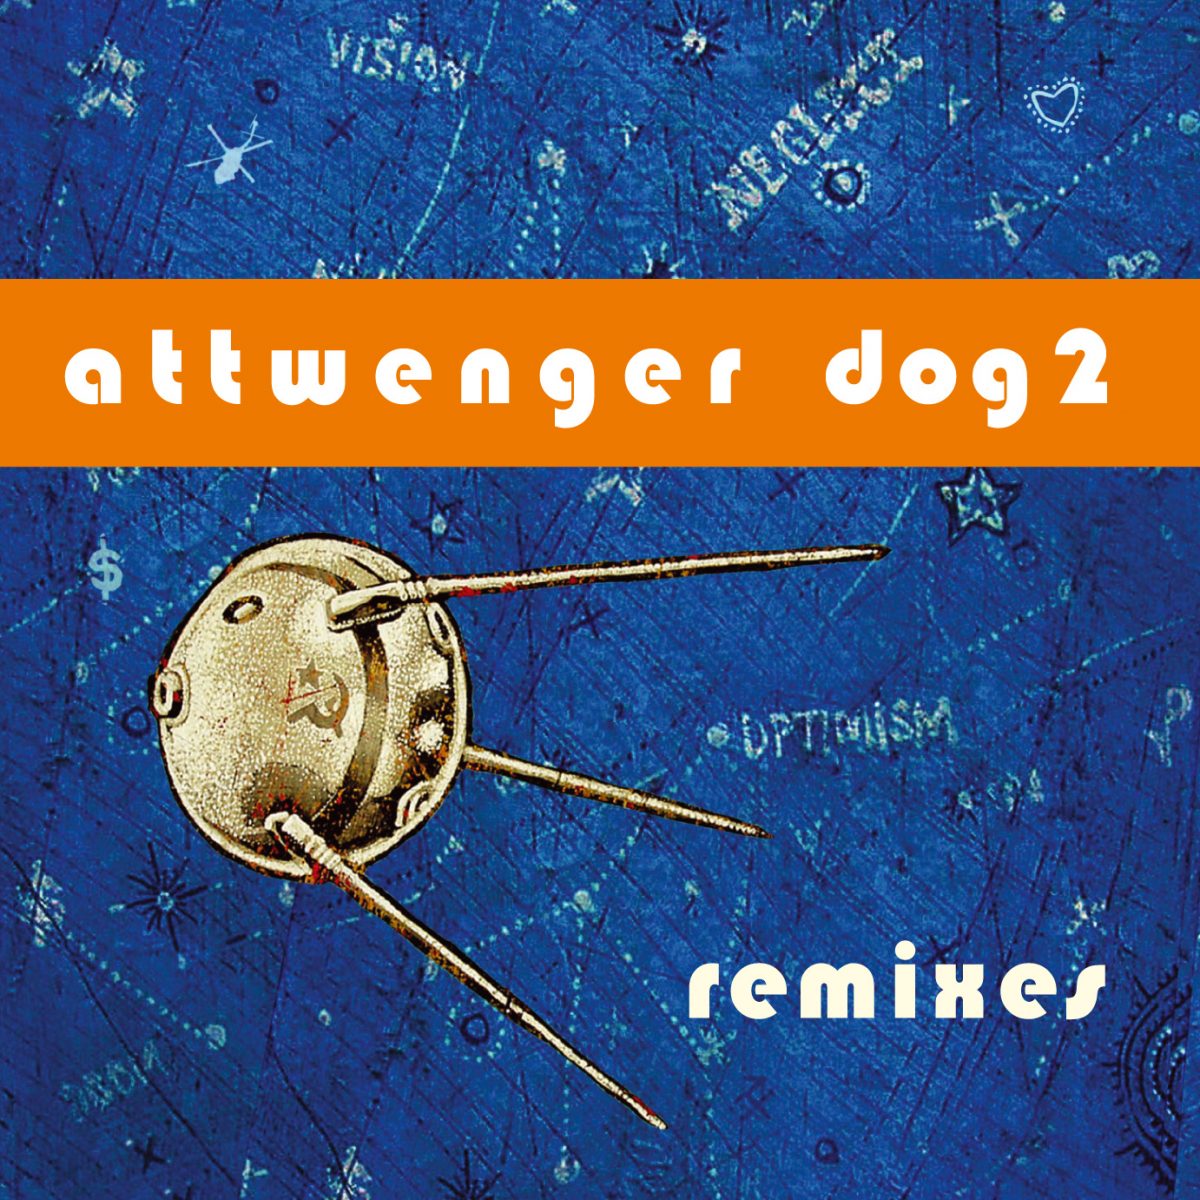 Attwenger - Dog 2 Remixes